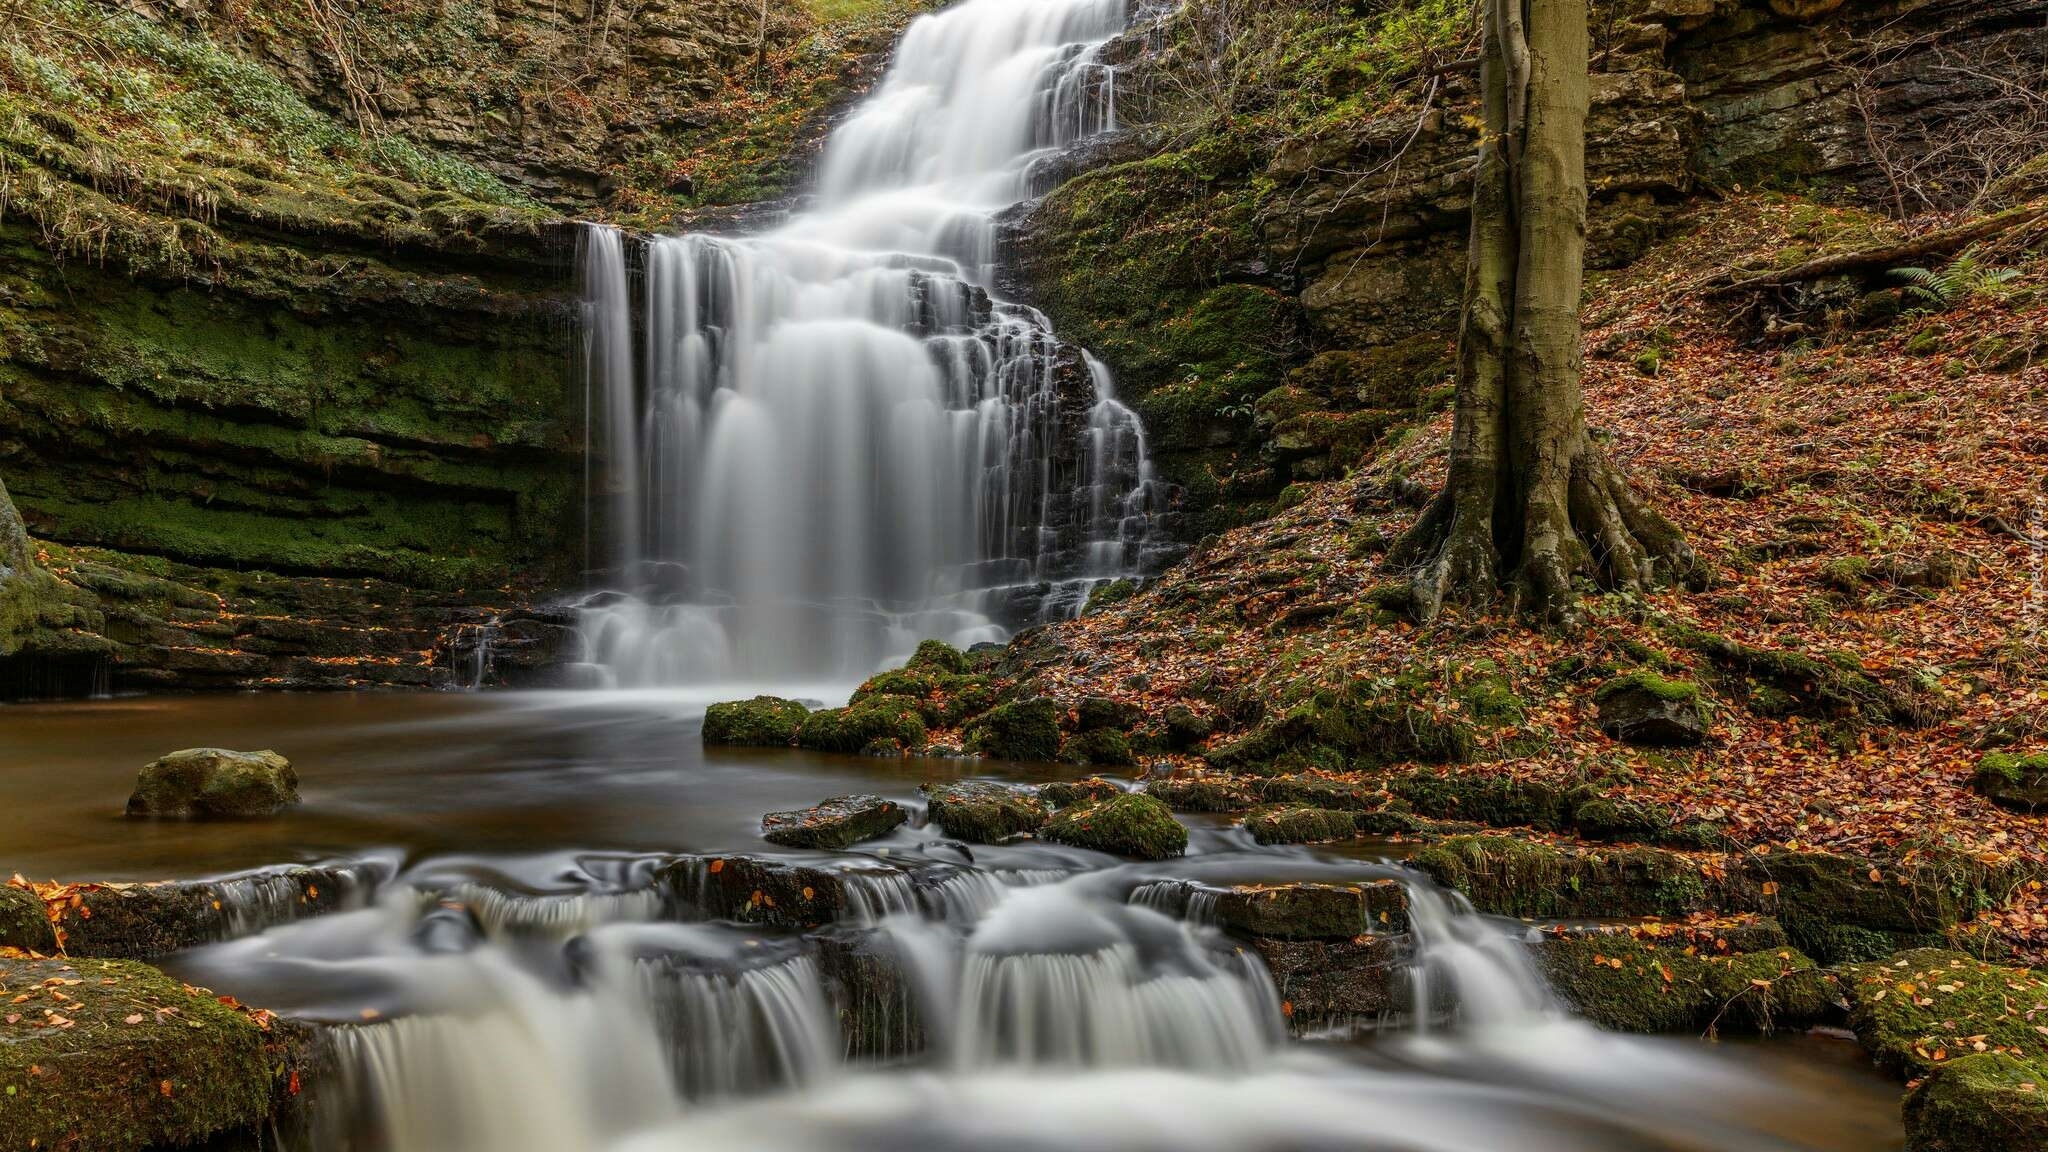 Anglia, Park Narodowy Yorkshire Dales, Wodospad Scaleber Force, Rzeka, Skały, Drzewo, Liście